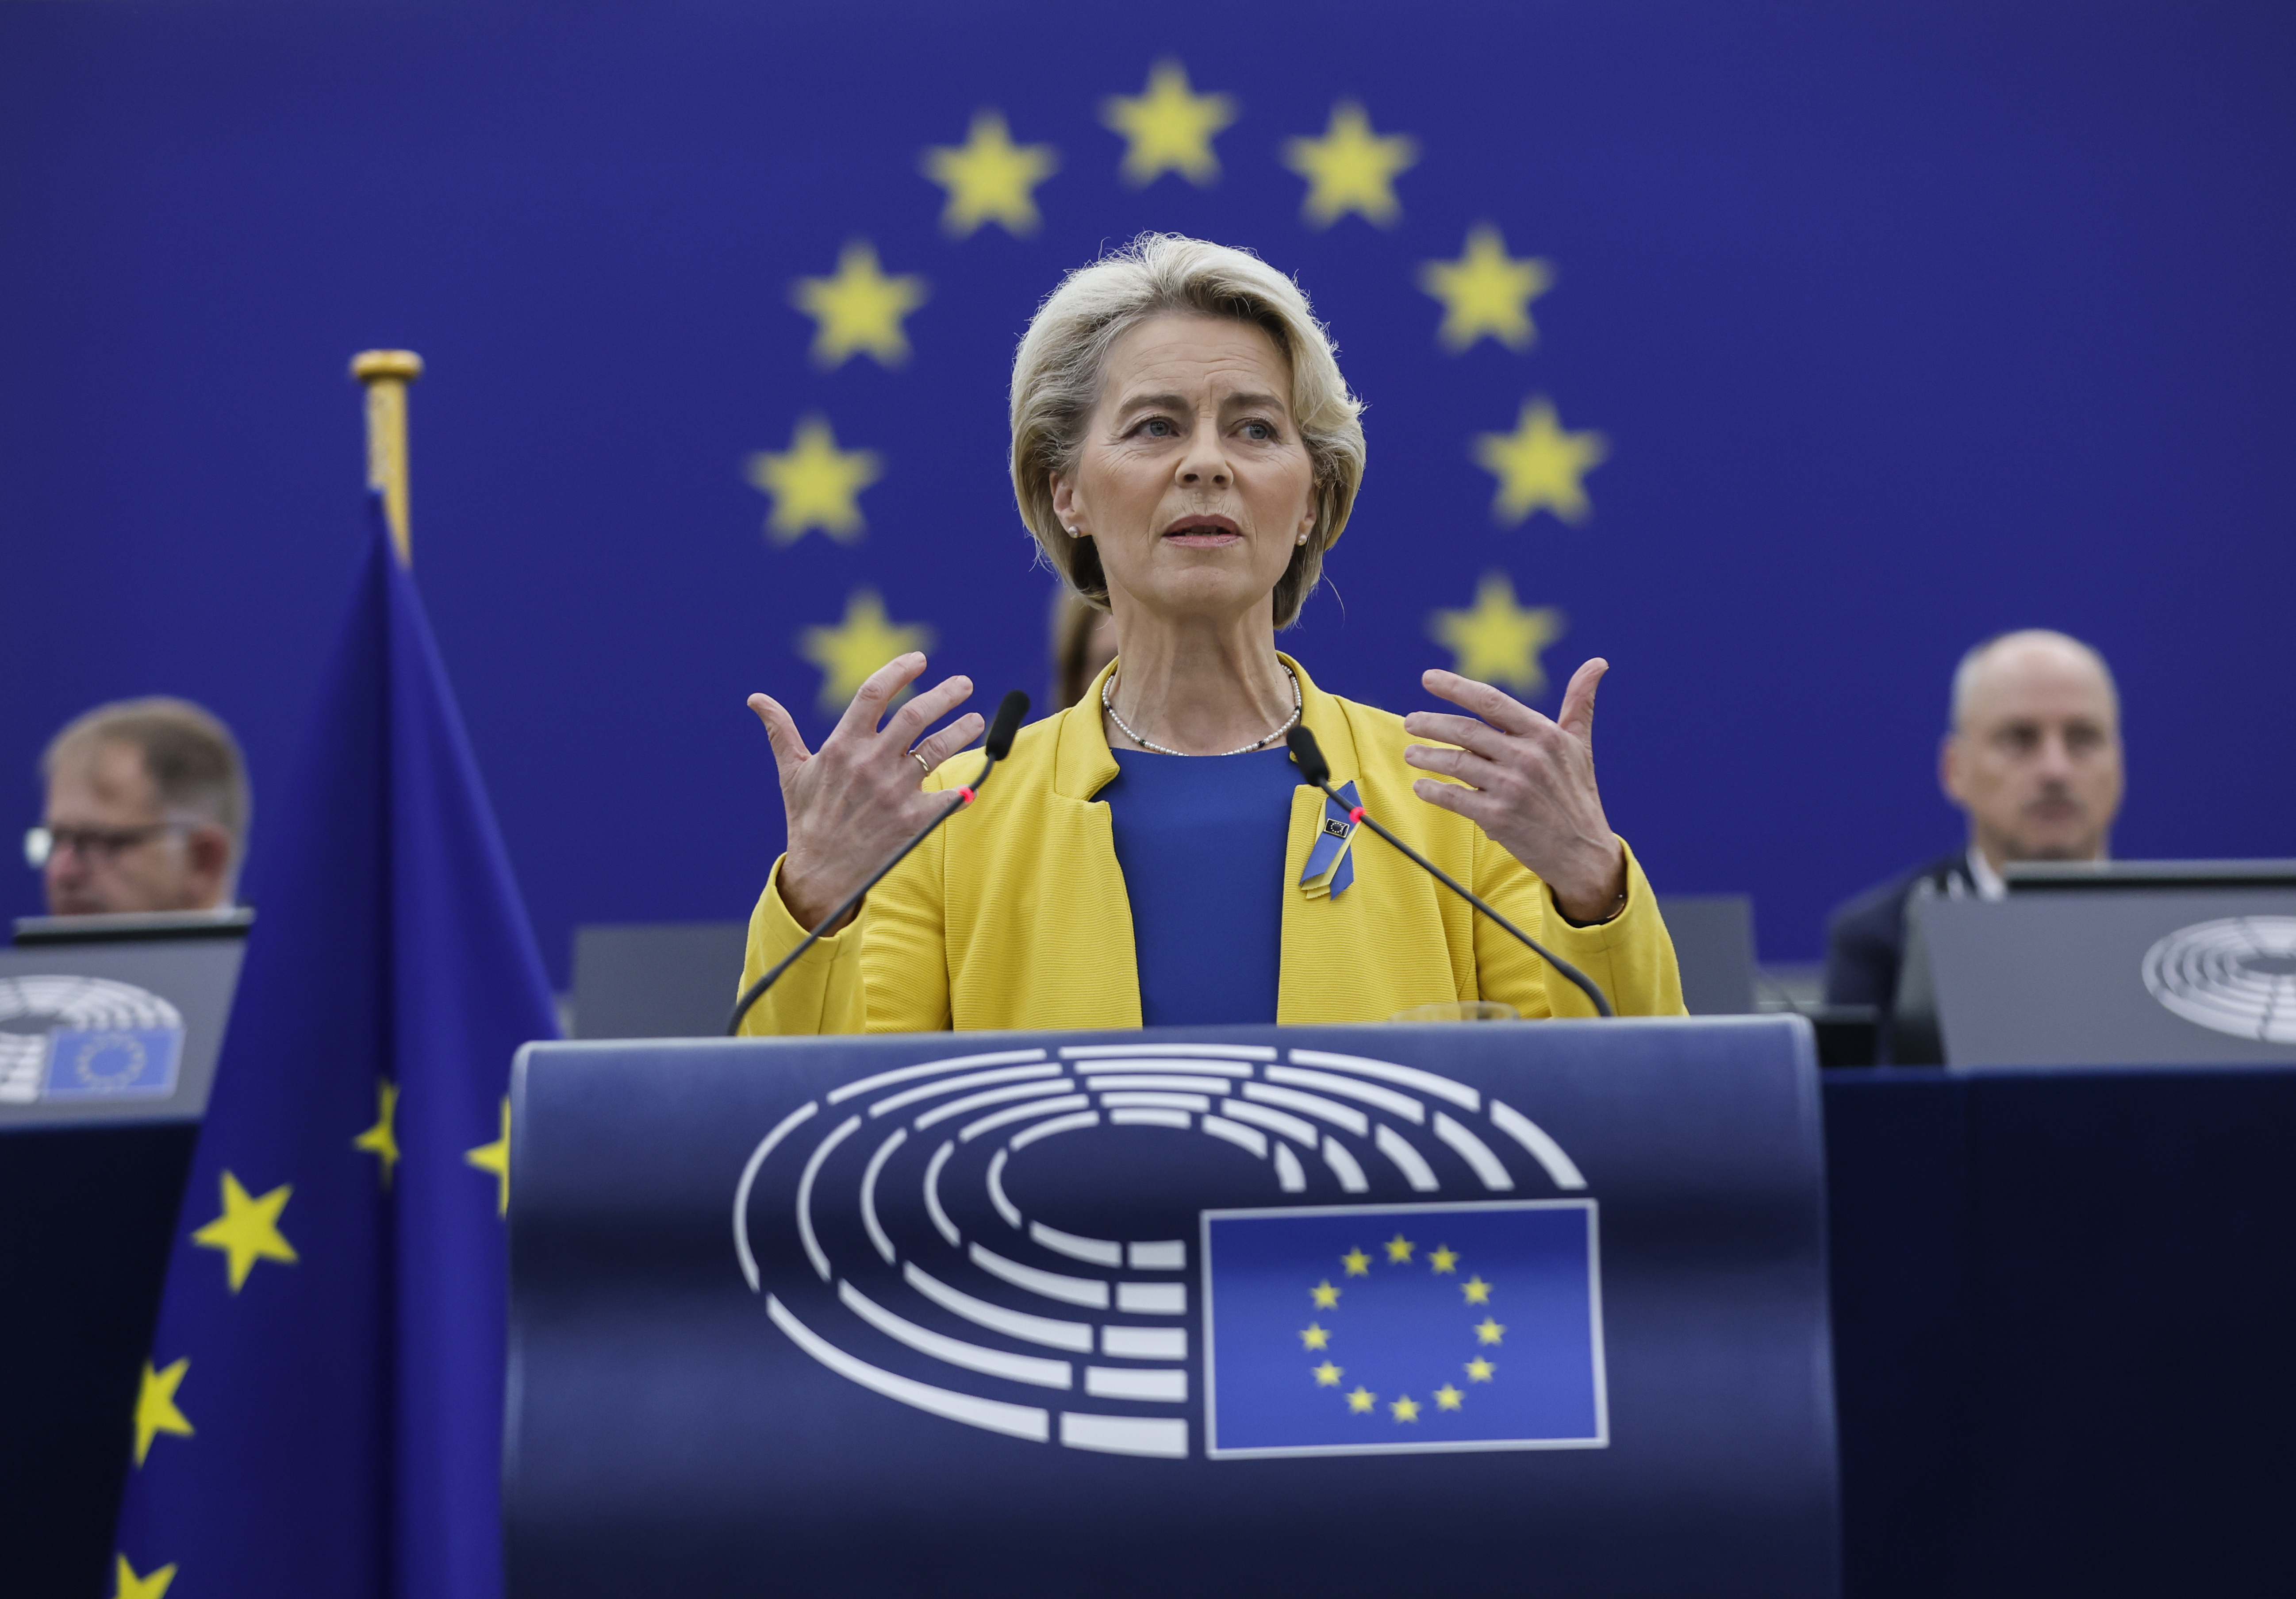 President of the European Commission Ursula von der Leyen during her speech on Ukraine in the European Parliament in Strasbourg